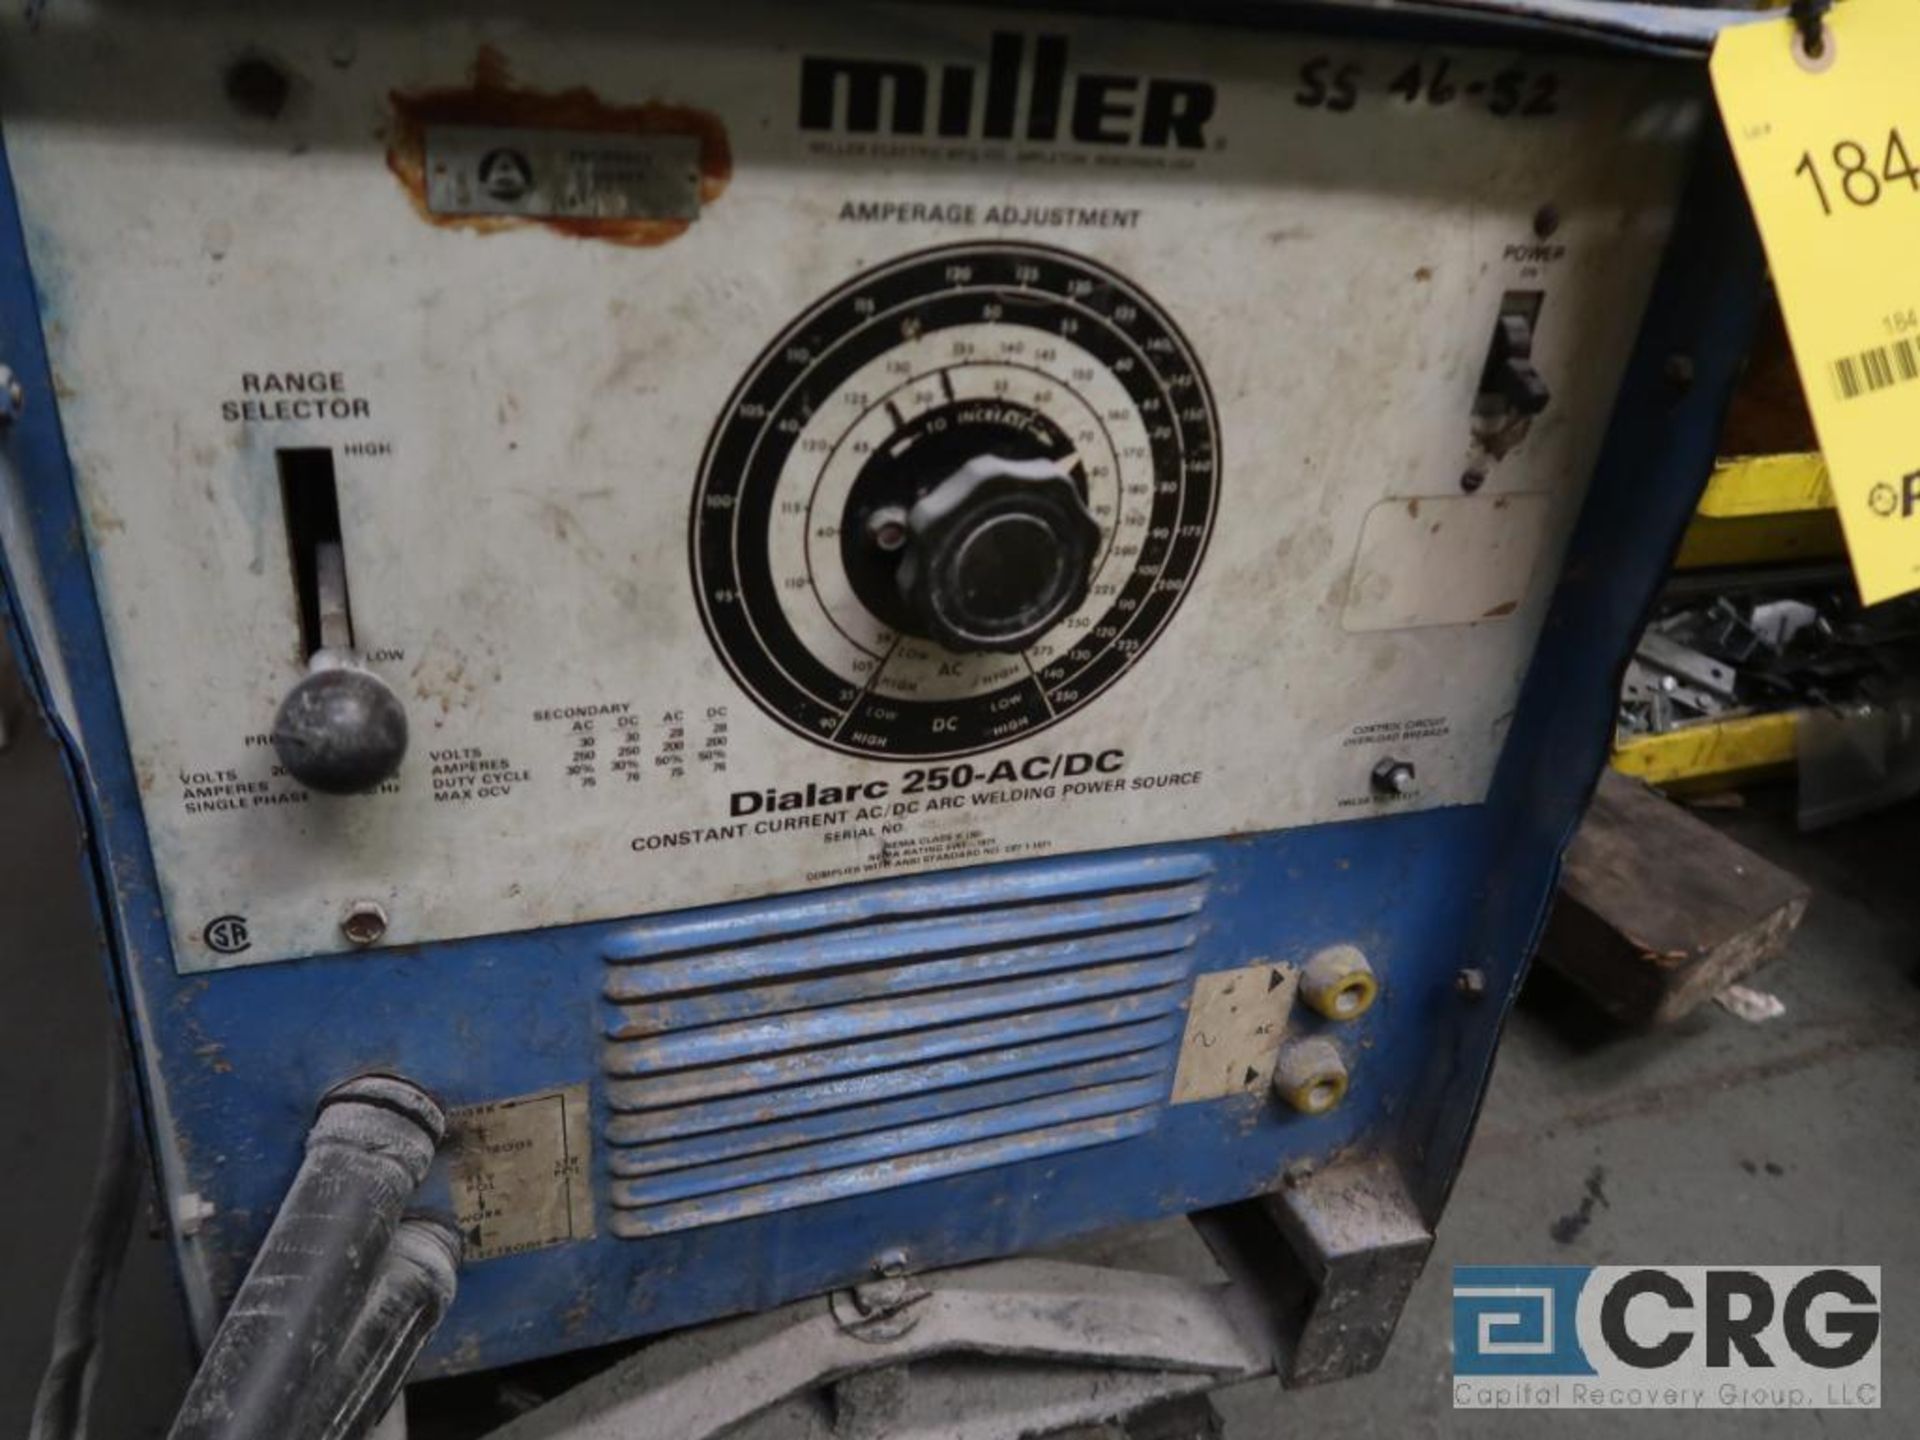 Miller Dialarc 250 CC-AC/DC arc welder, 200/230/460V, s/n S899, (mobile) (Rigging Equipment Shop) - Image 2 of 2